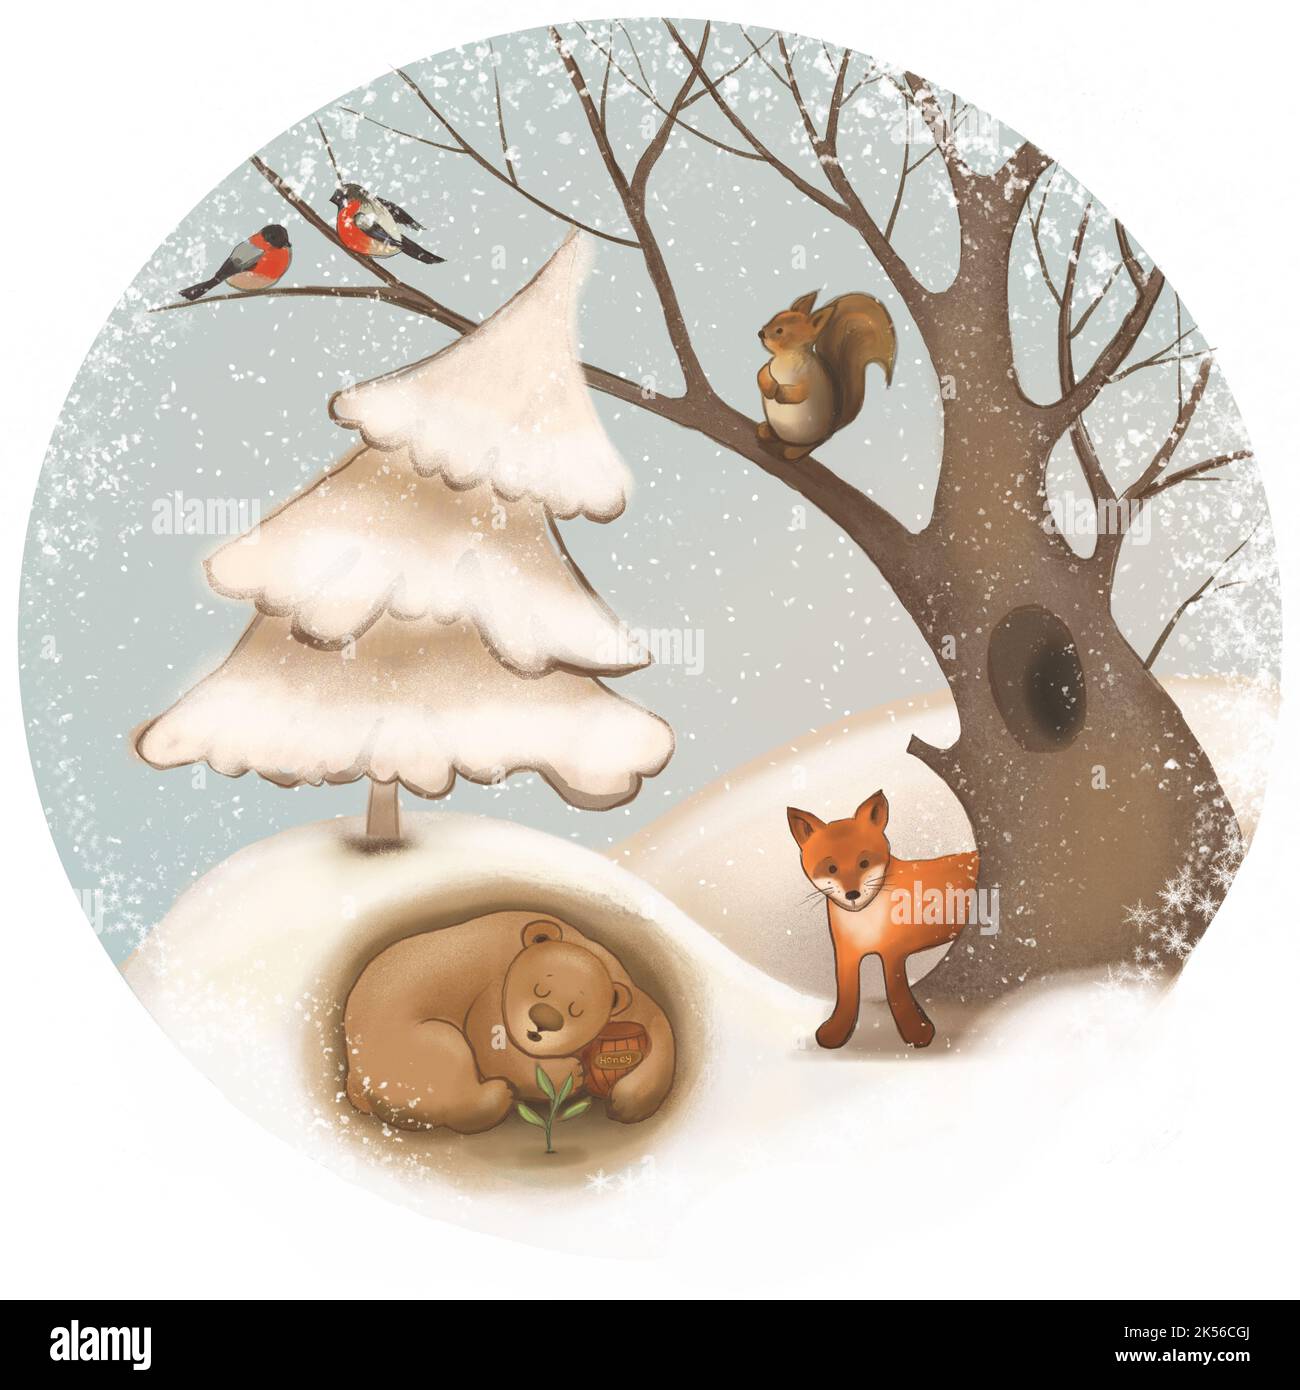 Conte de fées, belle, illustration d'hiver avec les animaux de la forêt. Banque D'Images